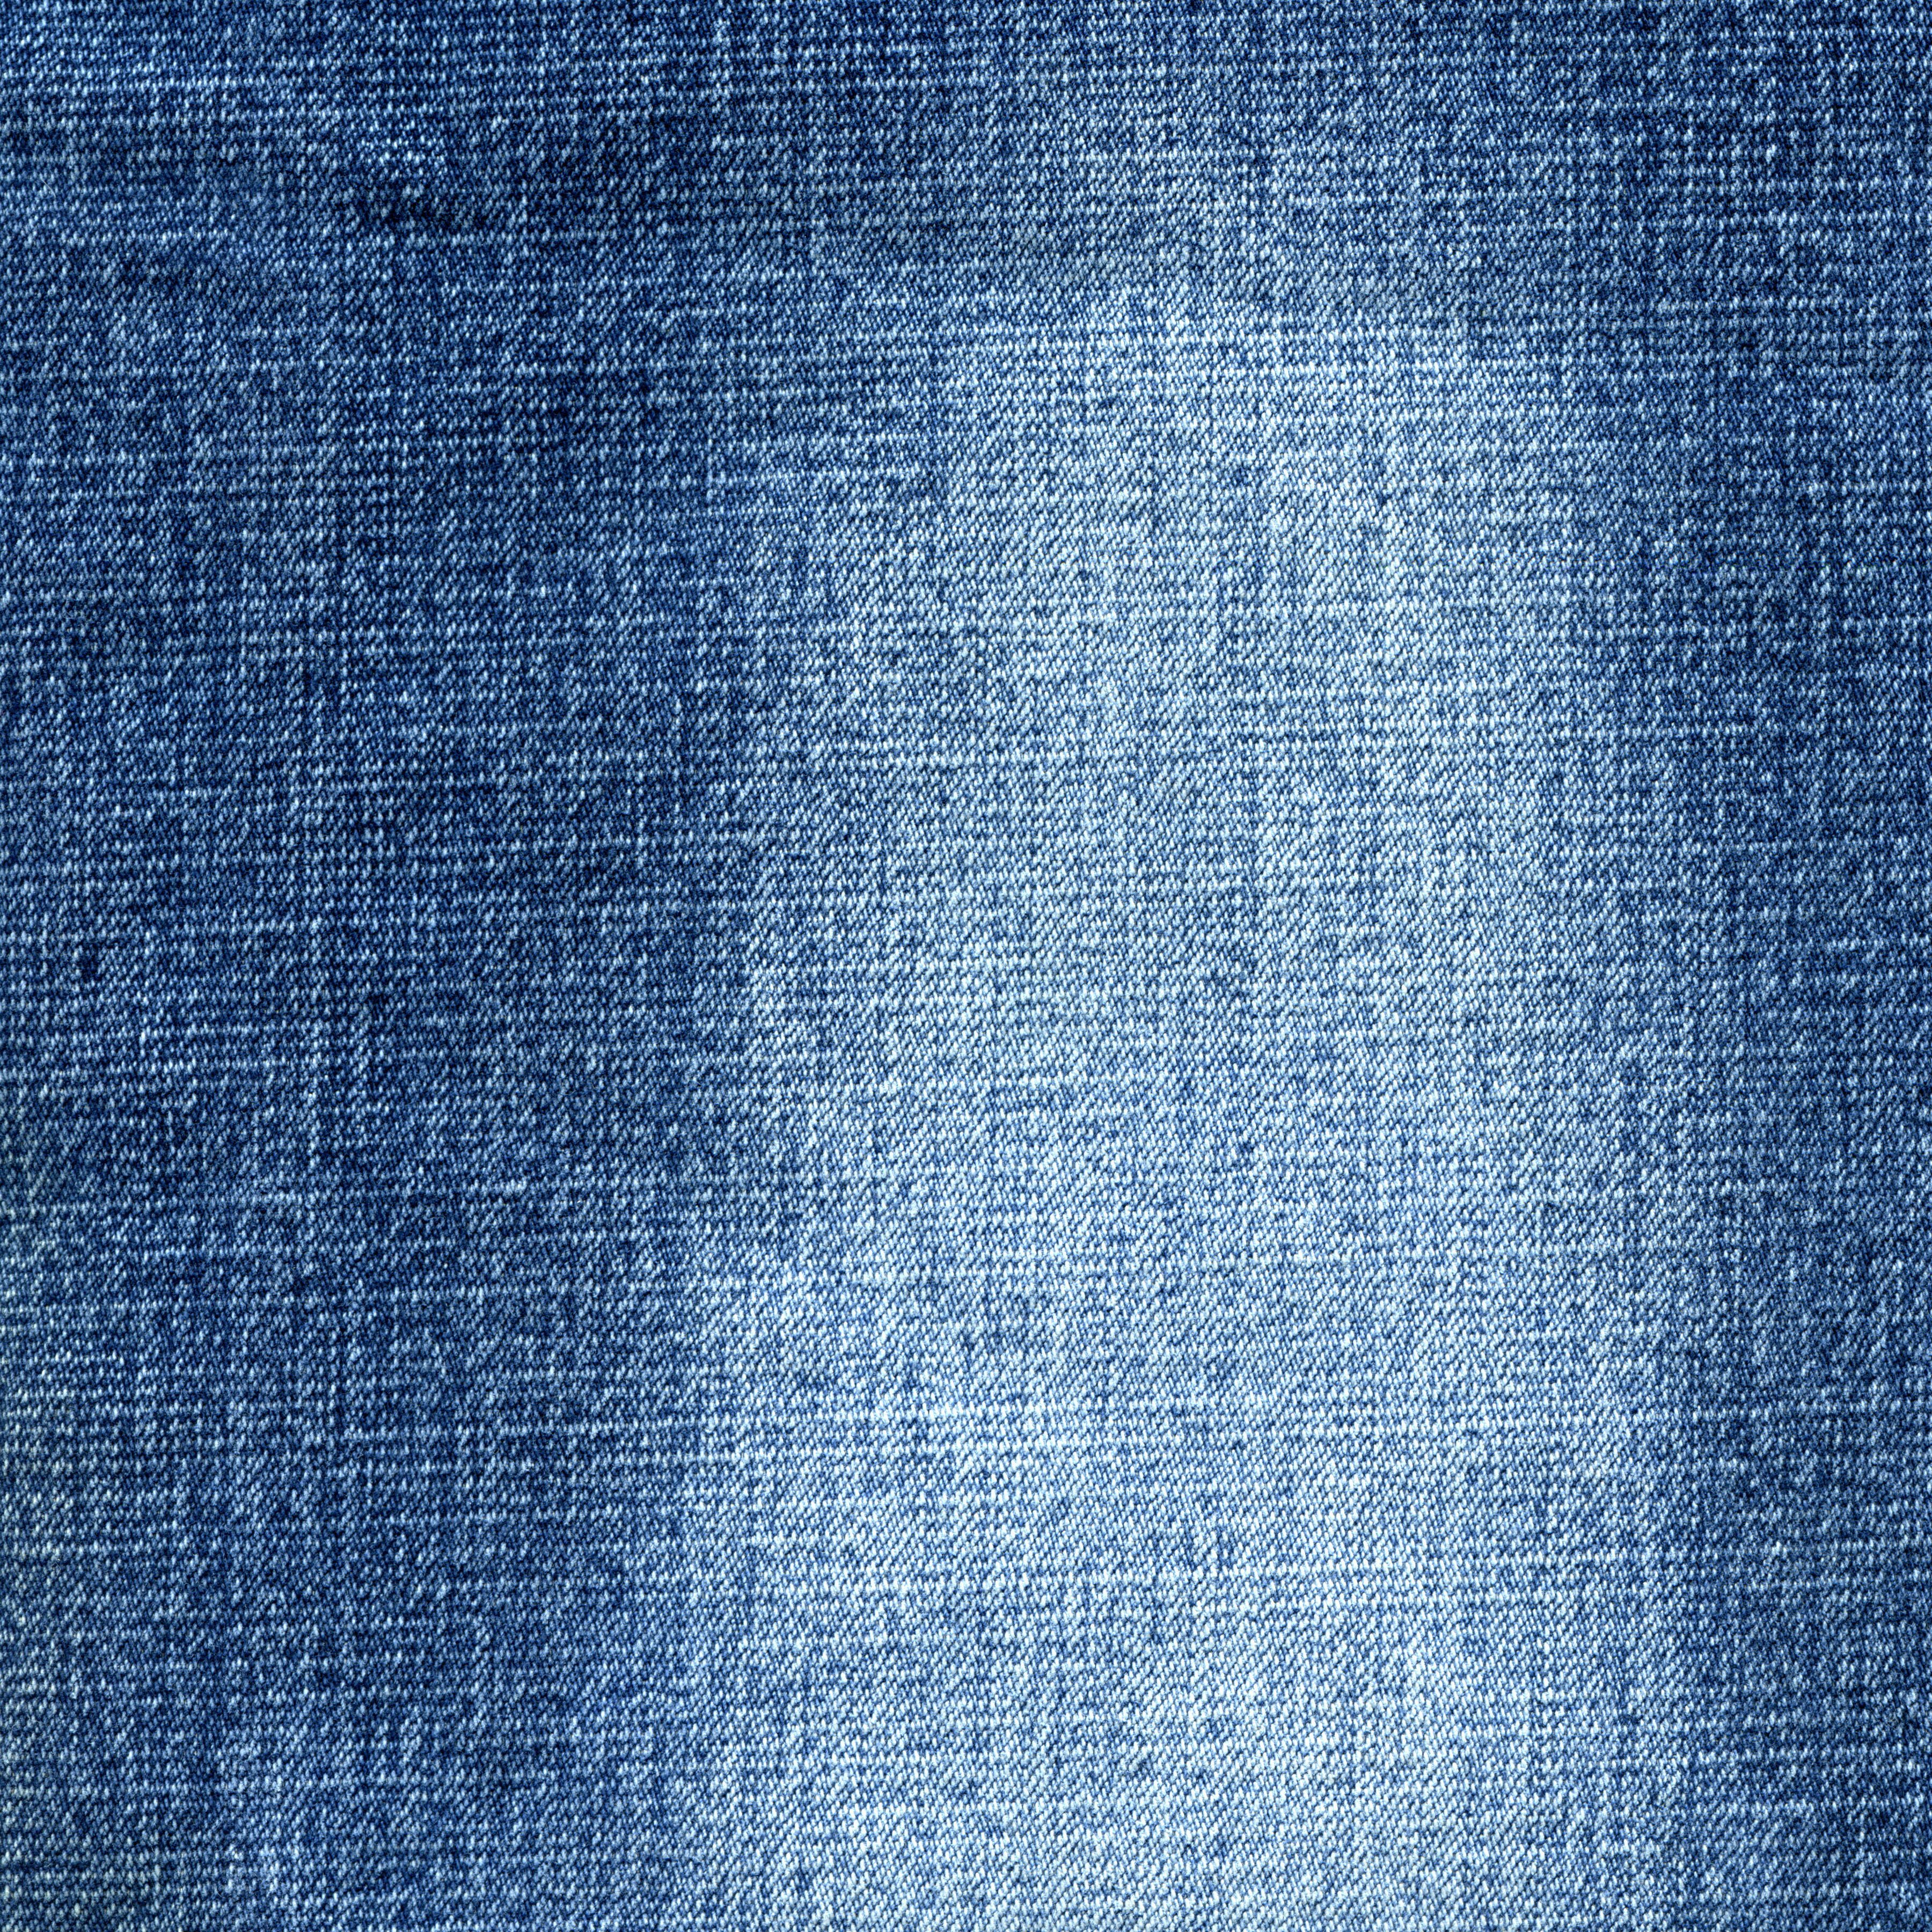 Джинсовый принт. Джинсовая ткань. Текстура джинсовой ткани. Фактура джинсовой ткани. Джинсы ткань.